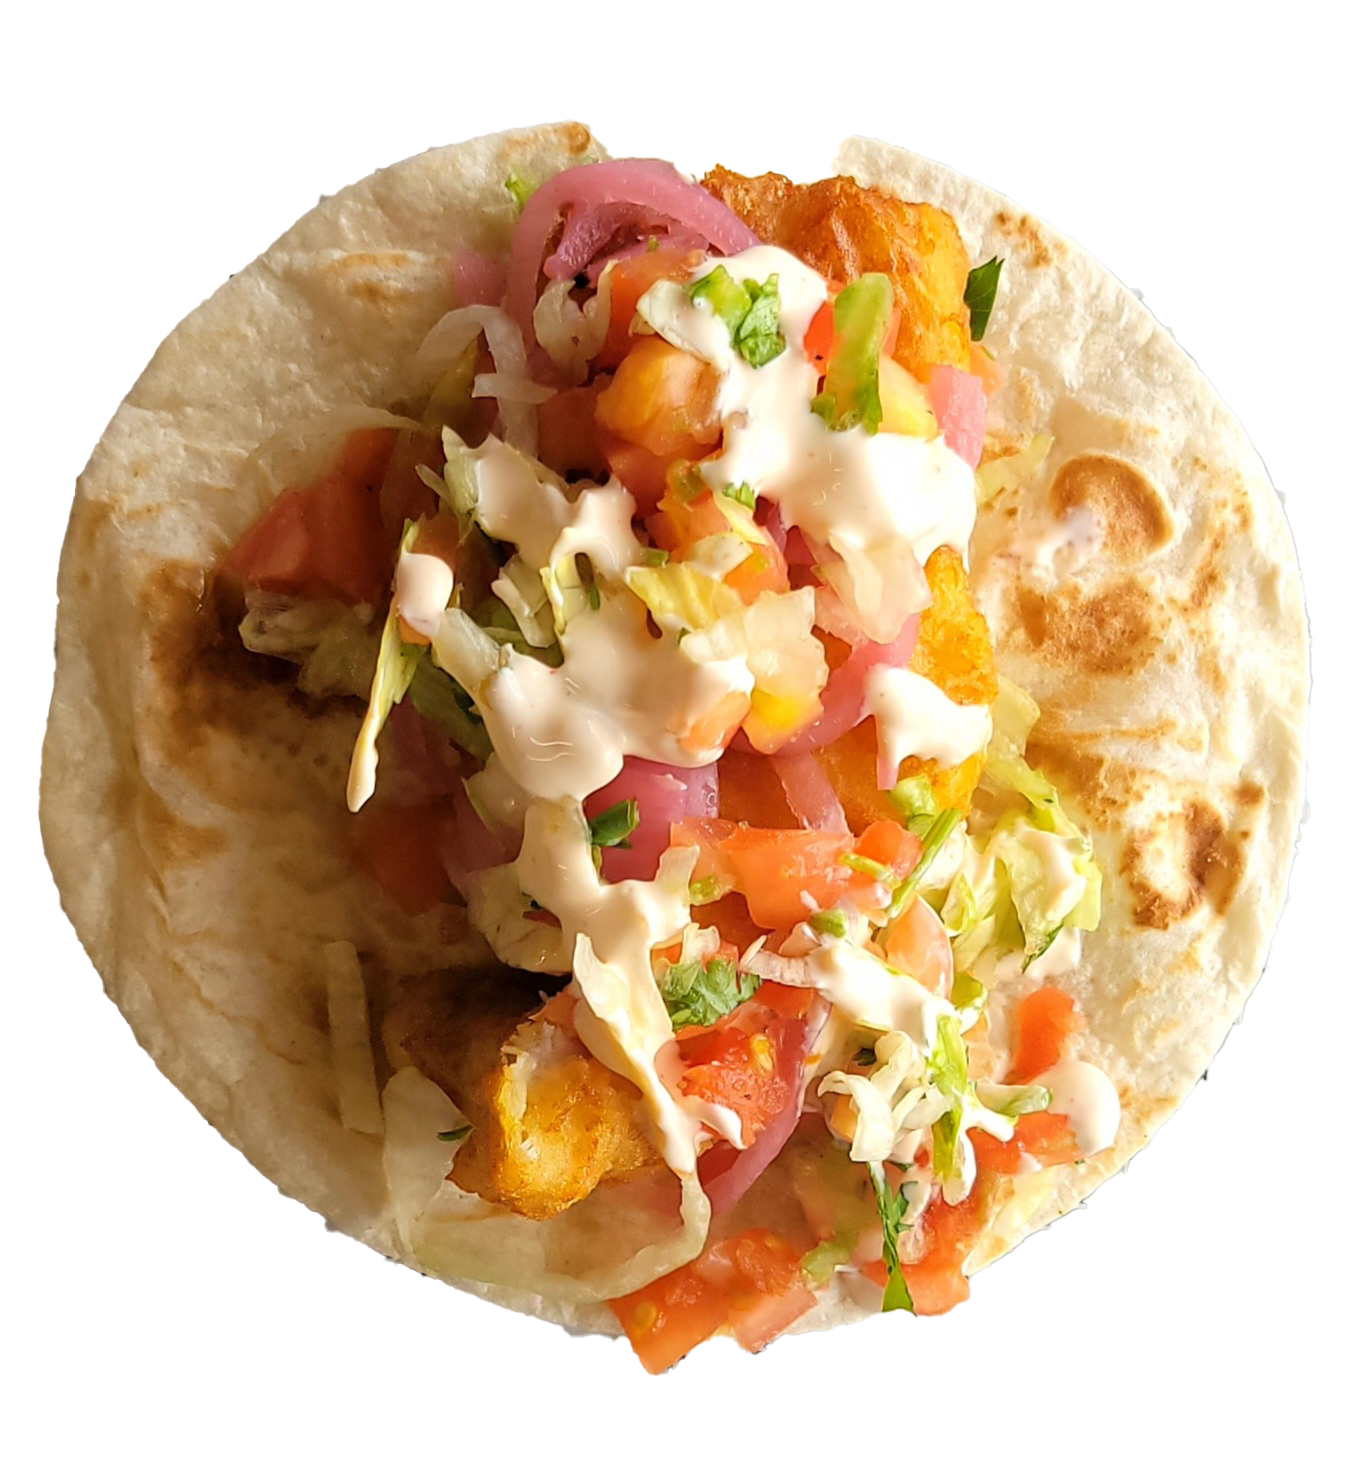 Baja Taco